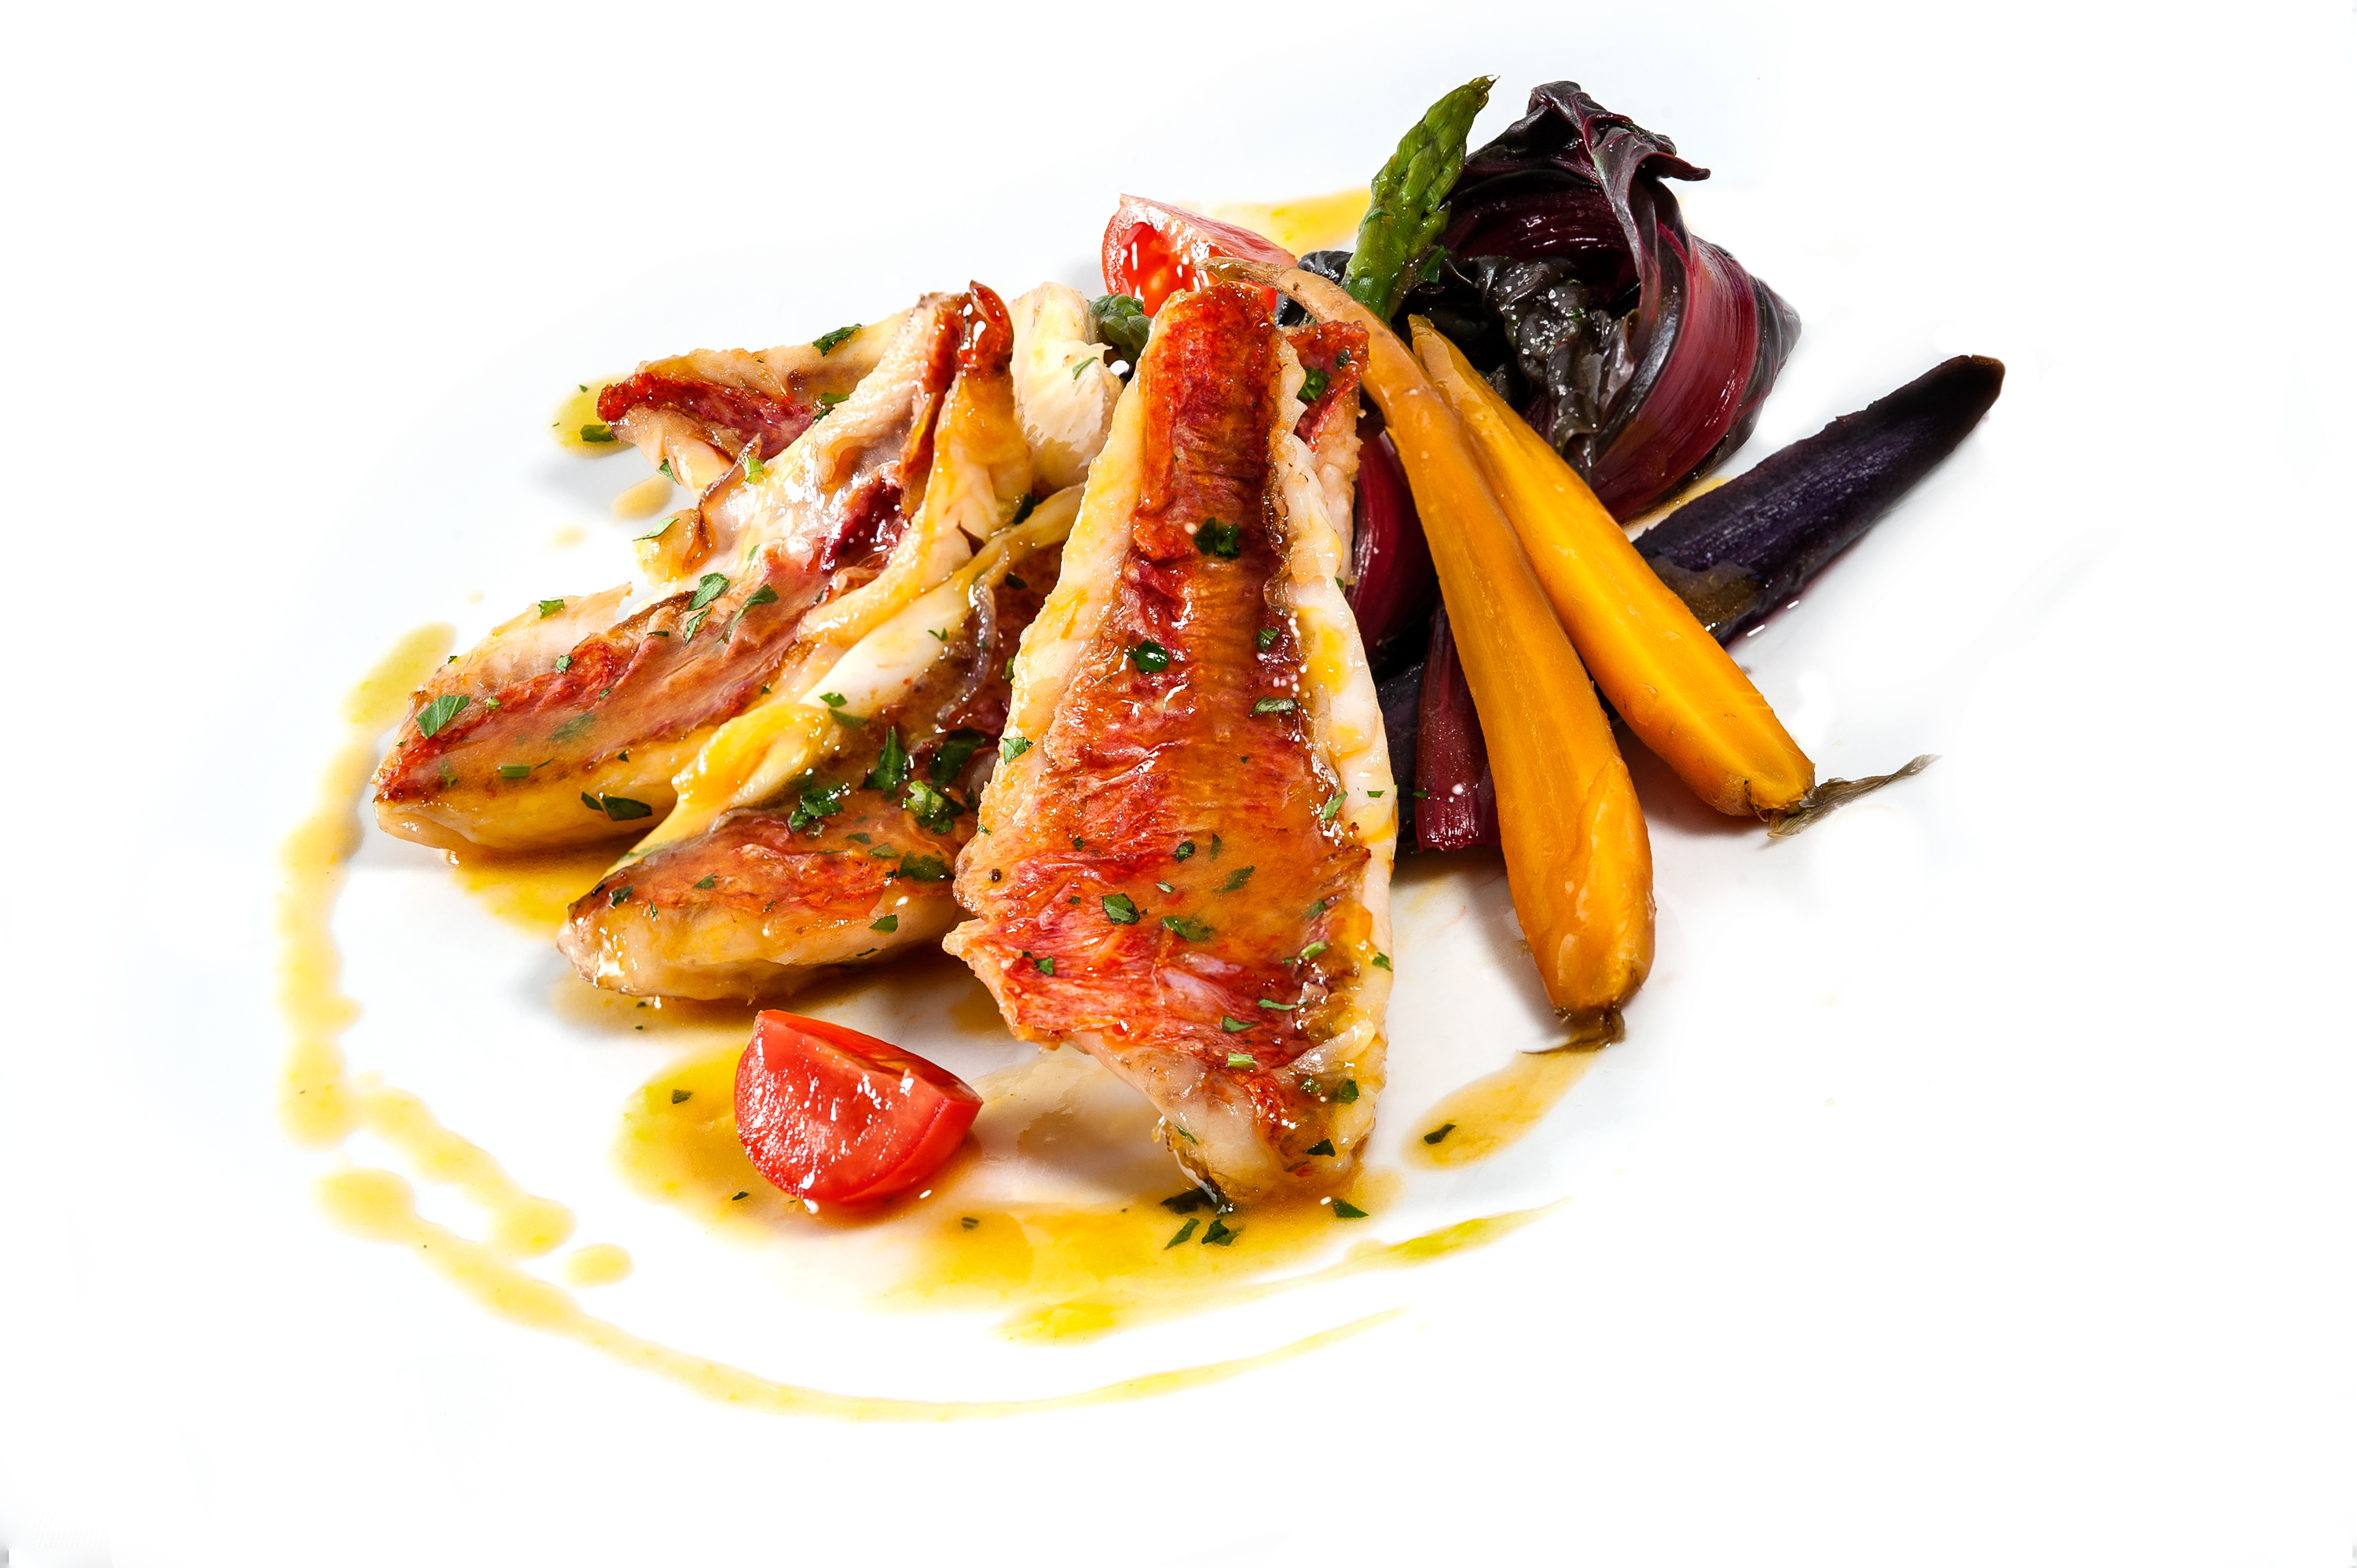 Le triglie sfilettate su verdurine baby rosolate e glassate sono un piatto di mare che si può mangiare al Ristorante La Scala di Cagliari. Scopri come prepararlo a casa tua.